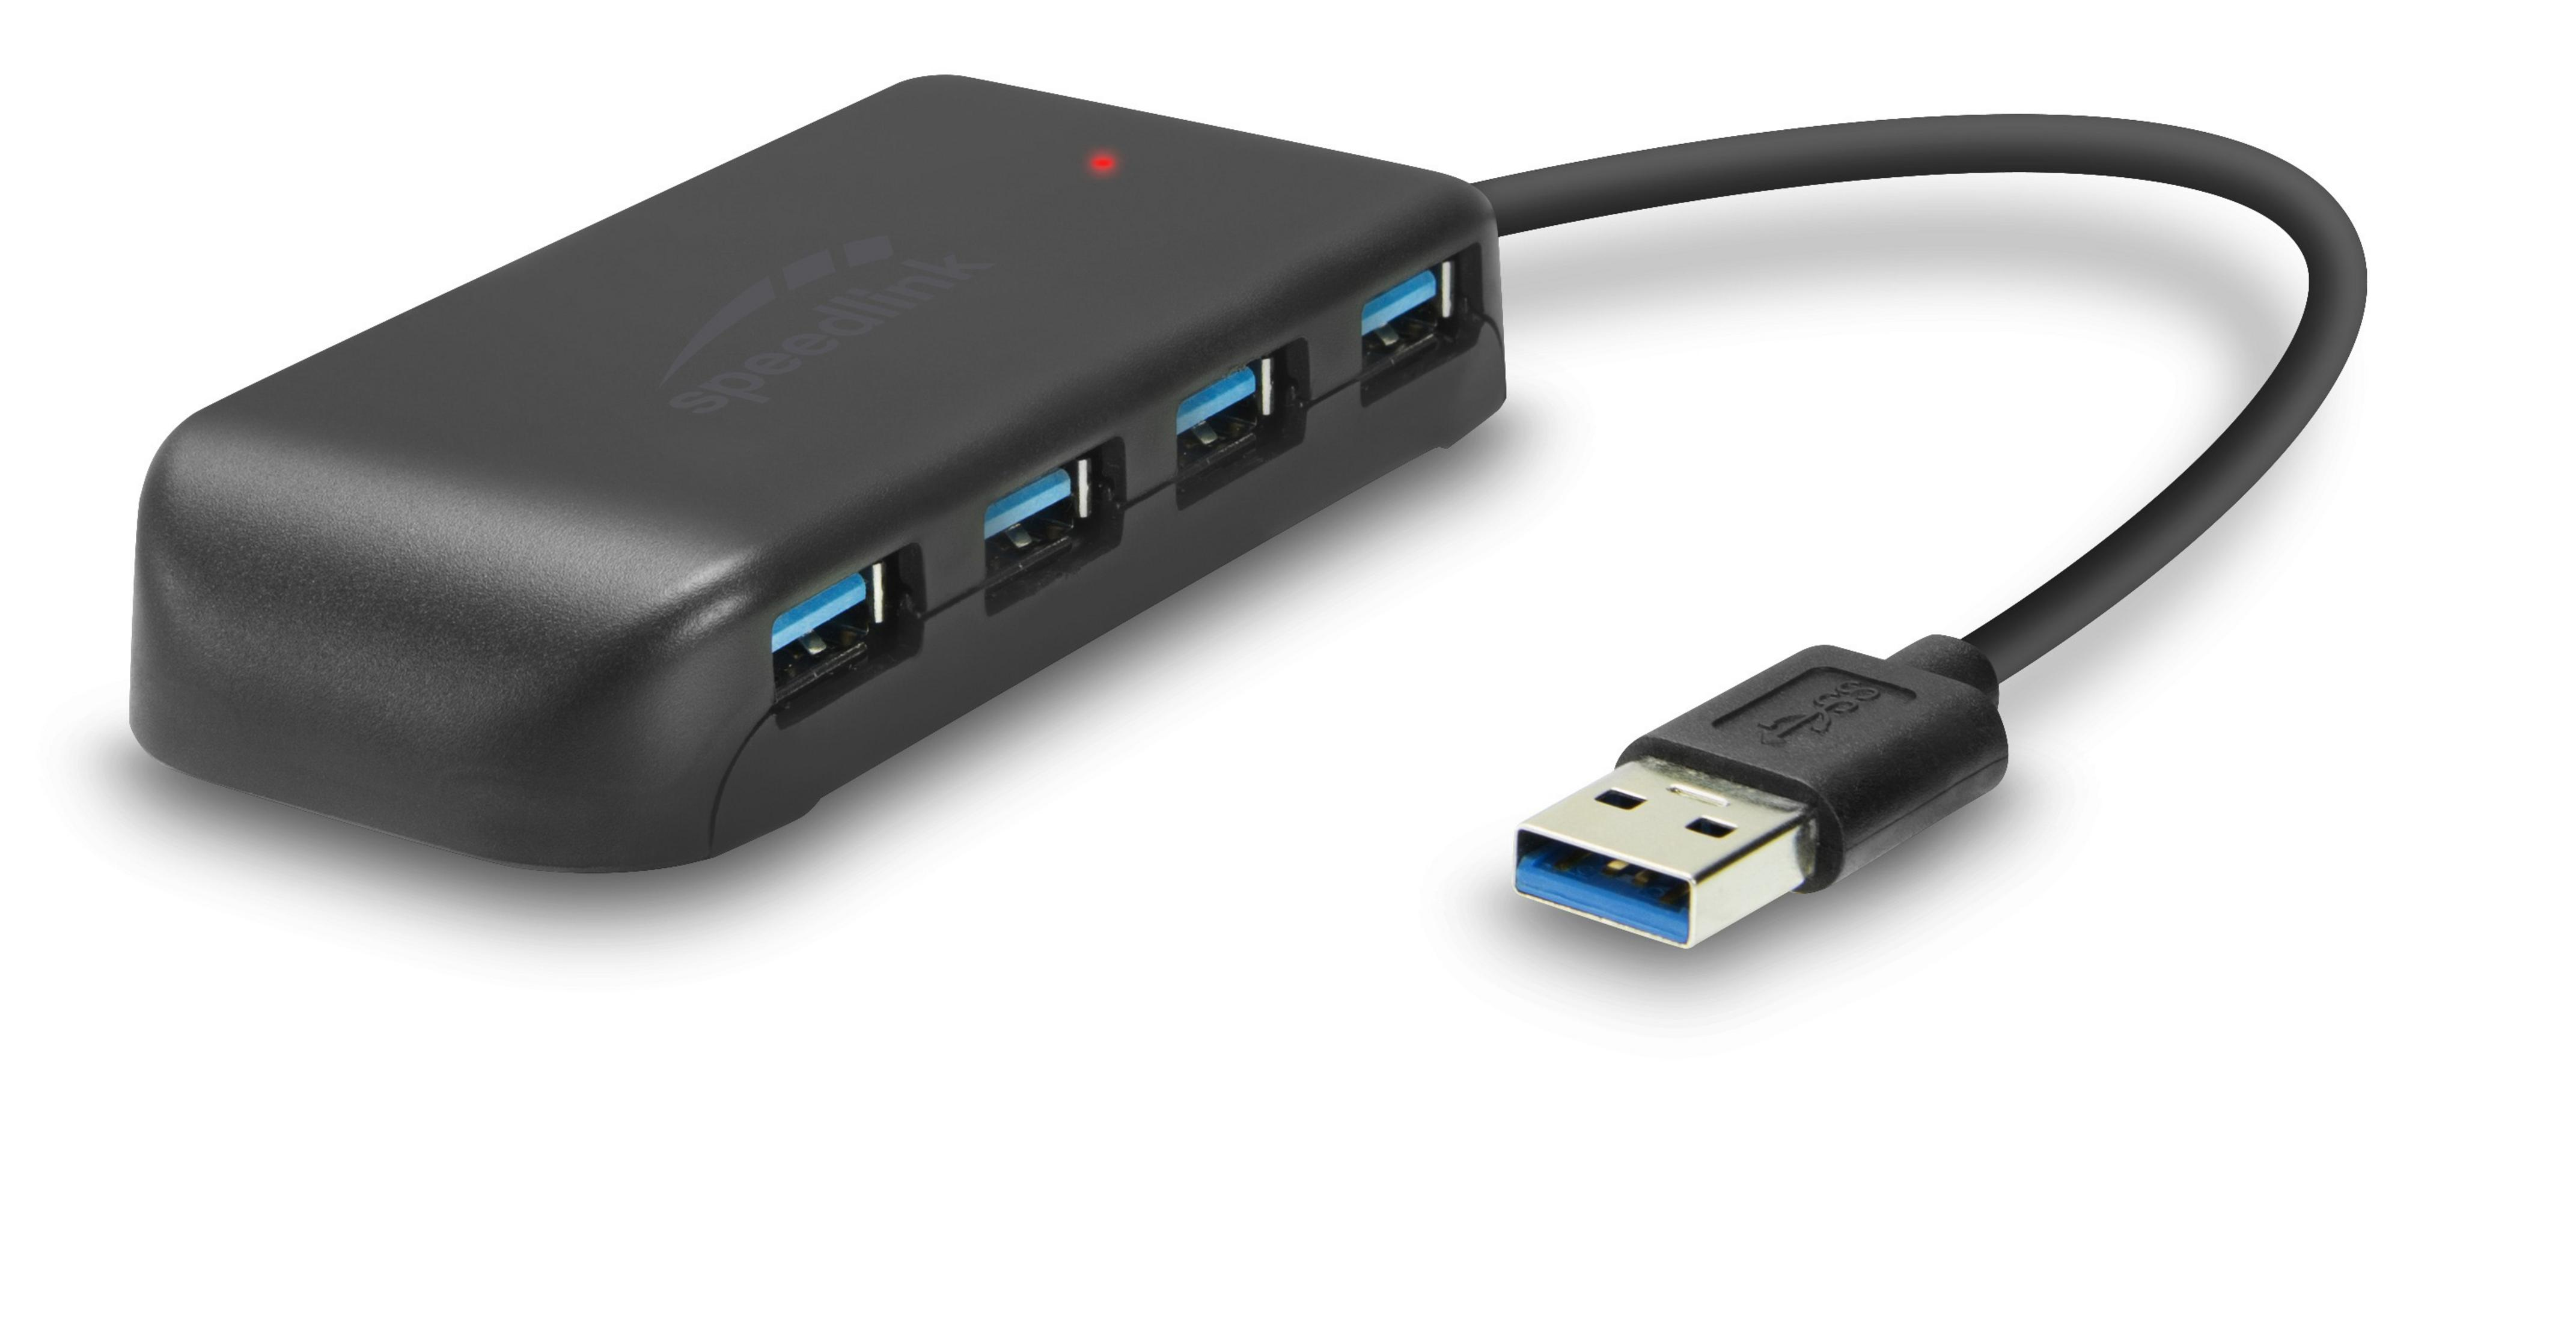 SPEEDLINK SL-140108-BK USB 7-PORT EVO 3.0, SNAPPY Schwarz USB HUB USB Hub